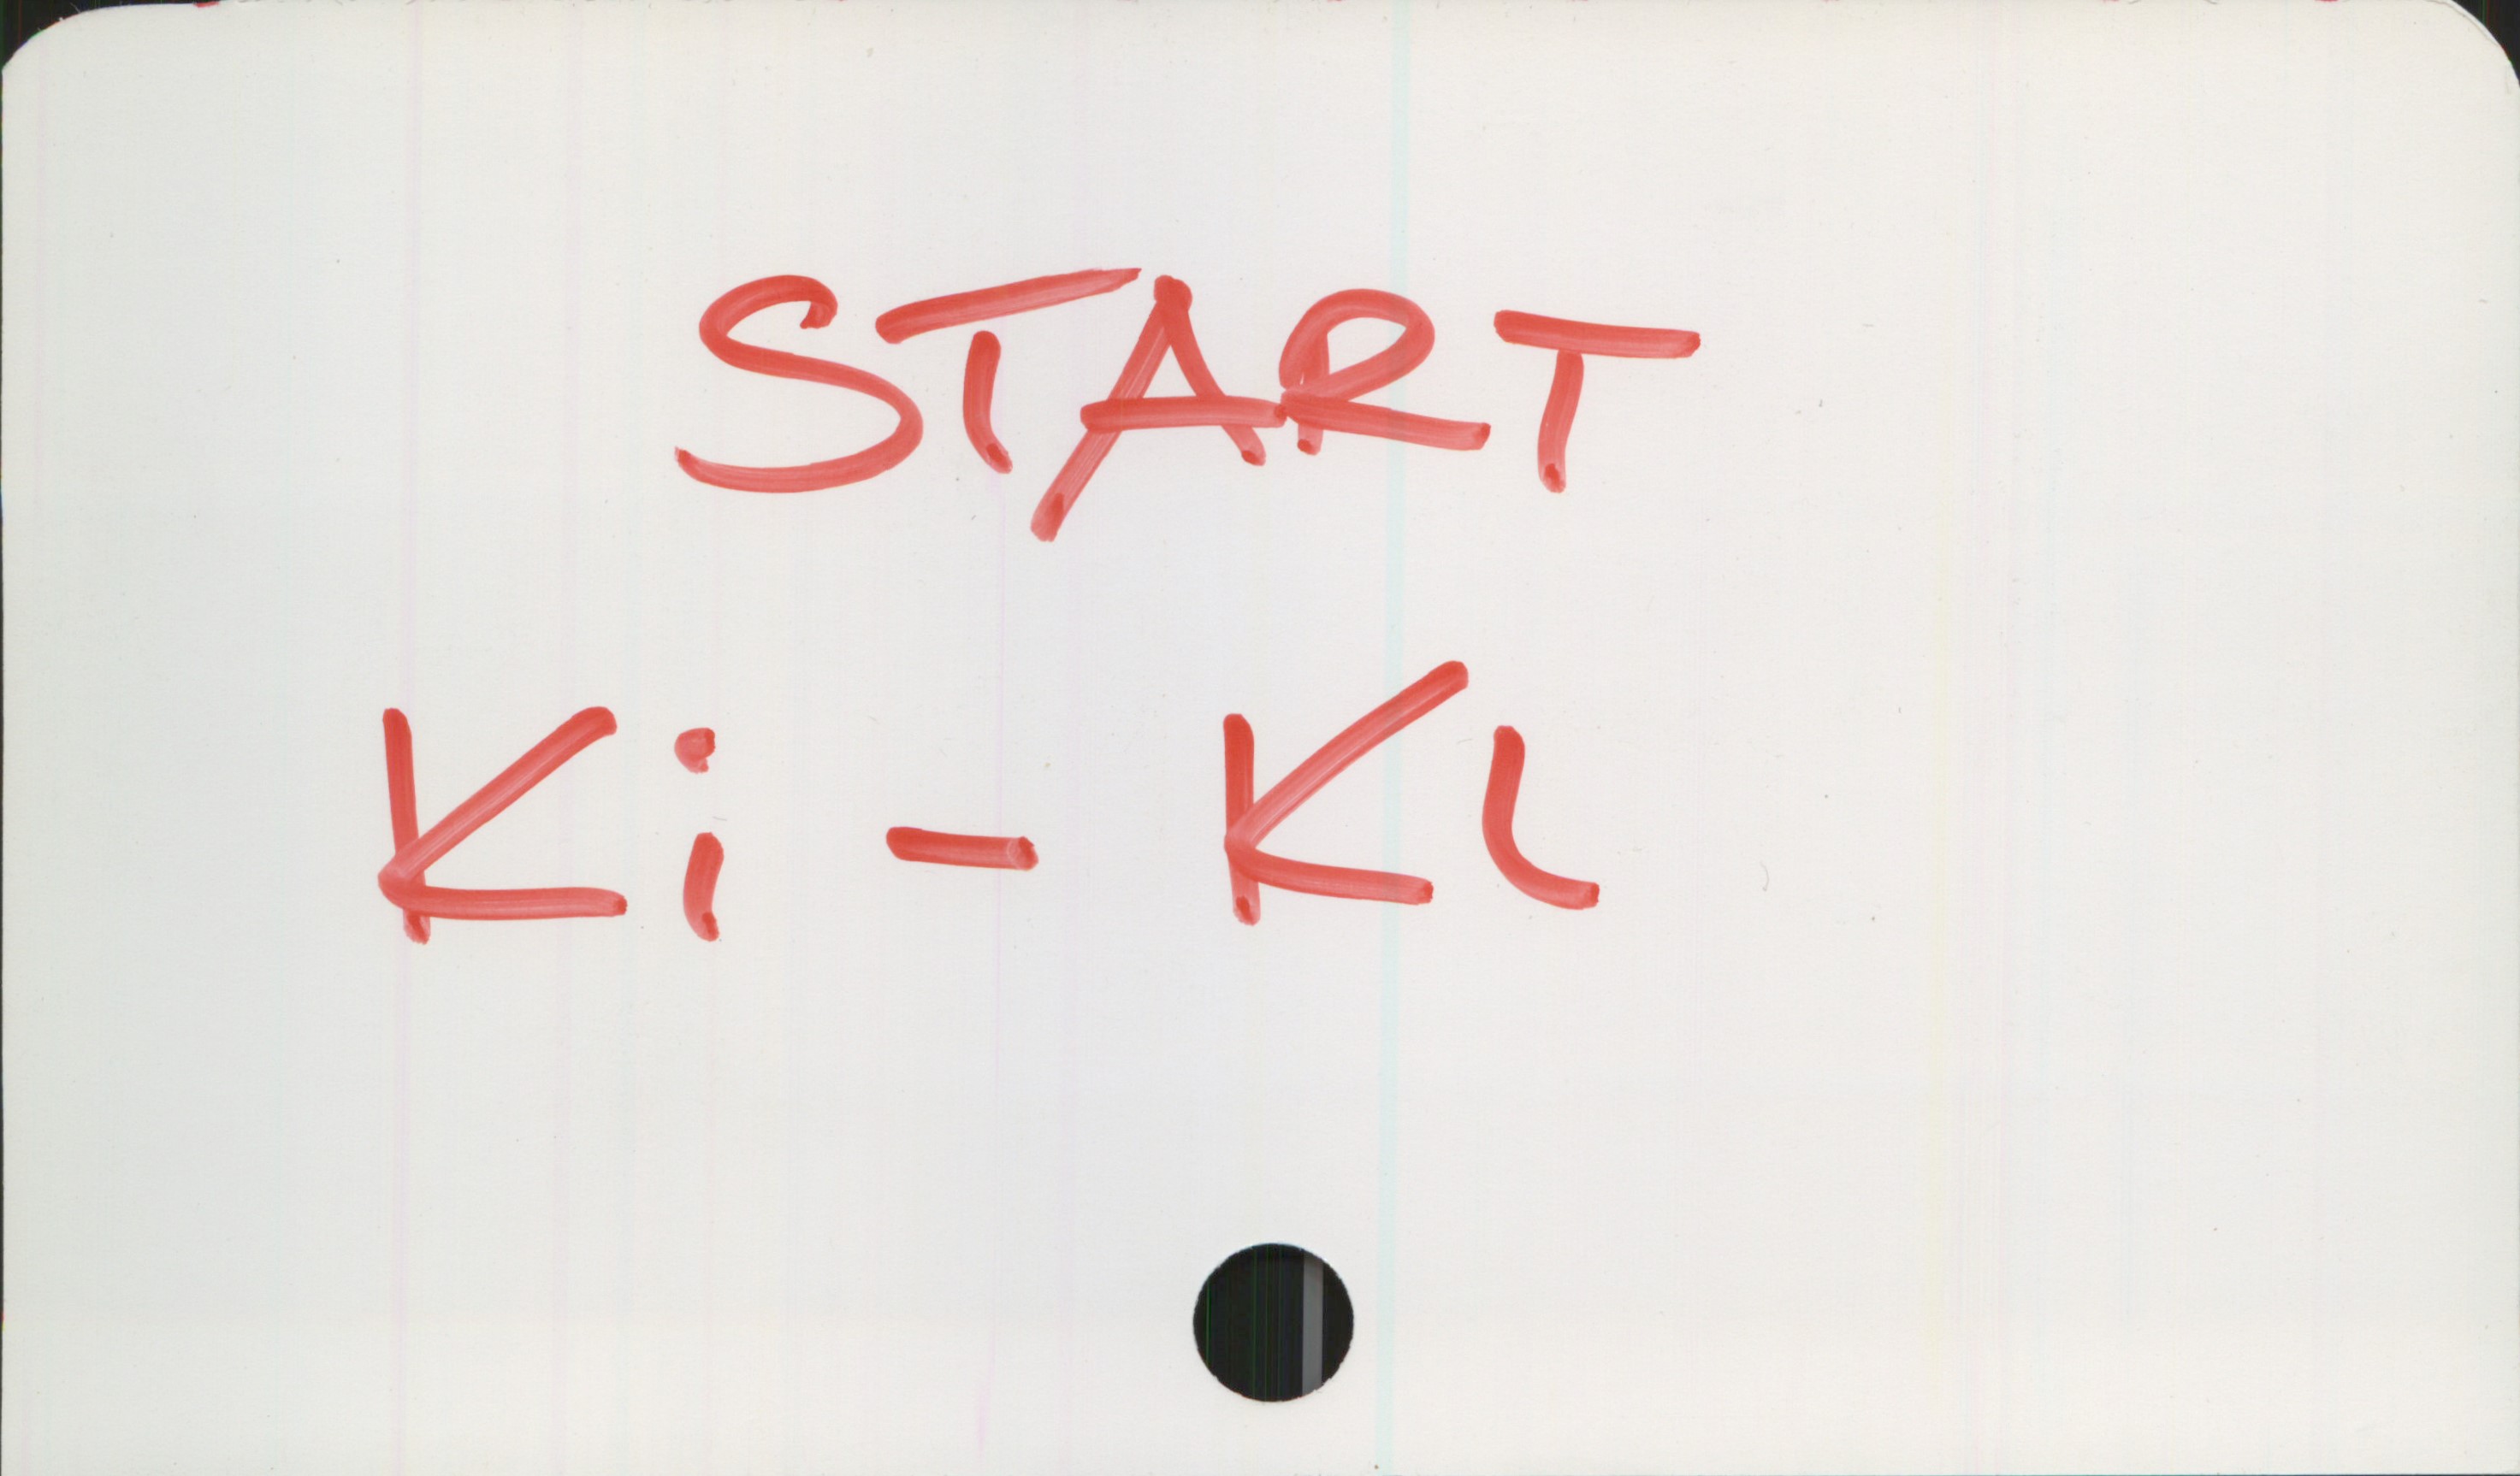 START START
Ki - Kl